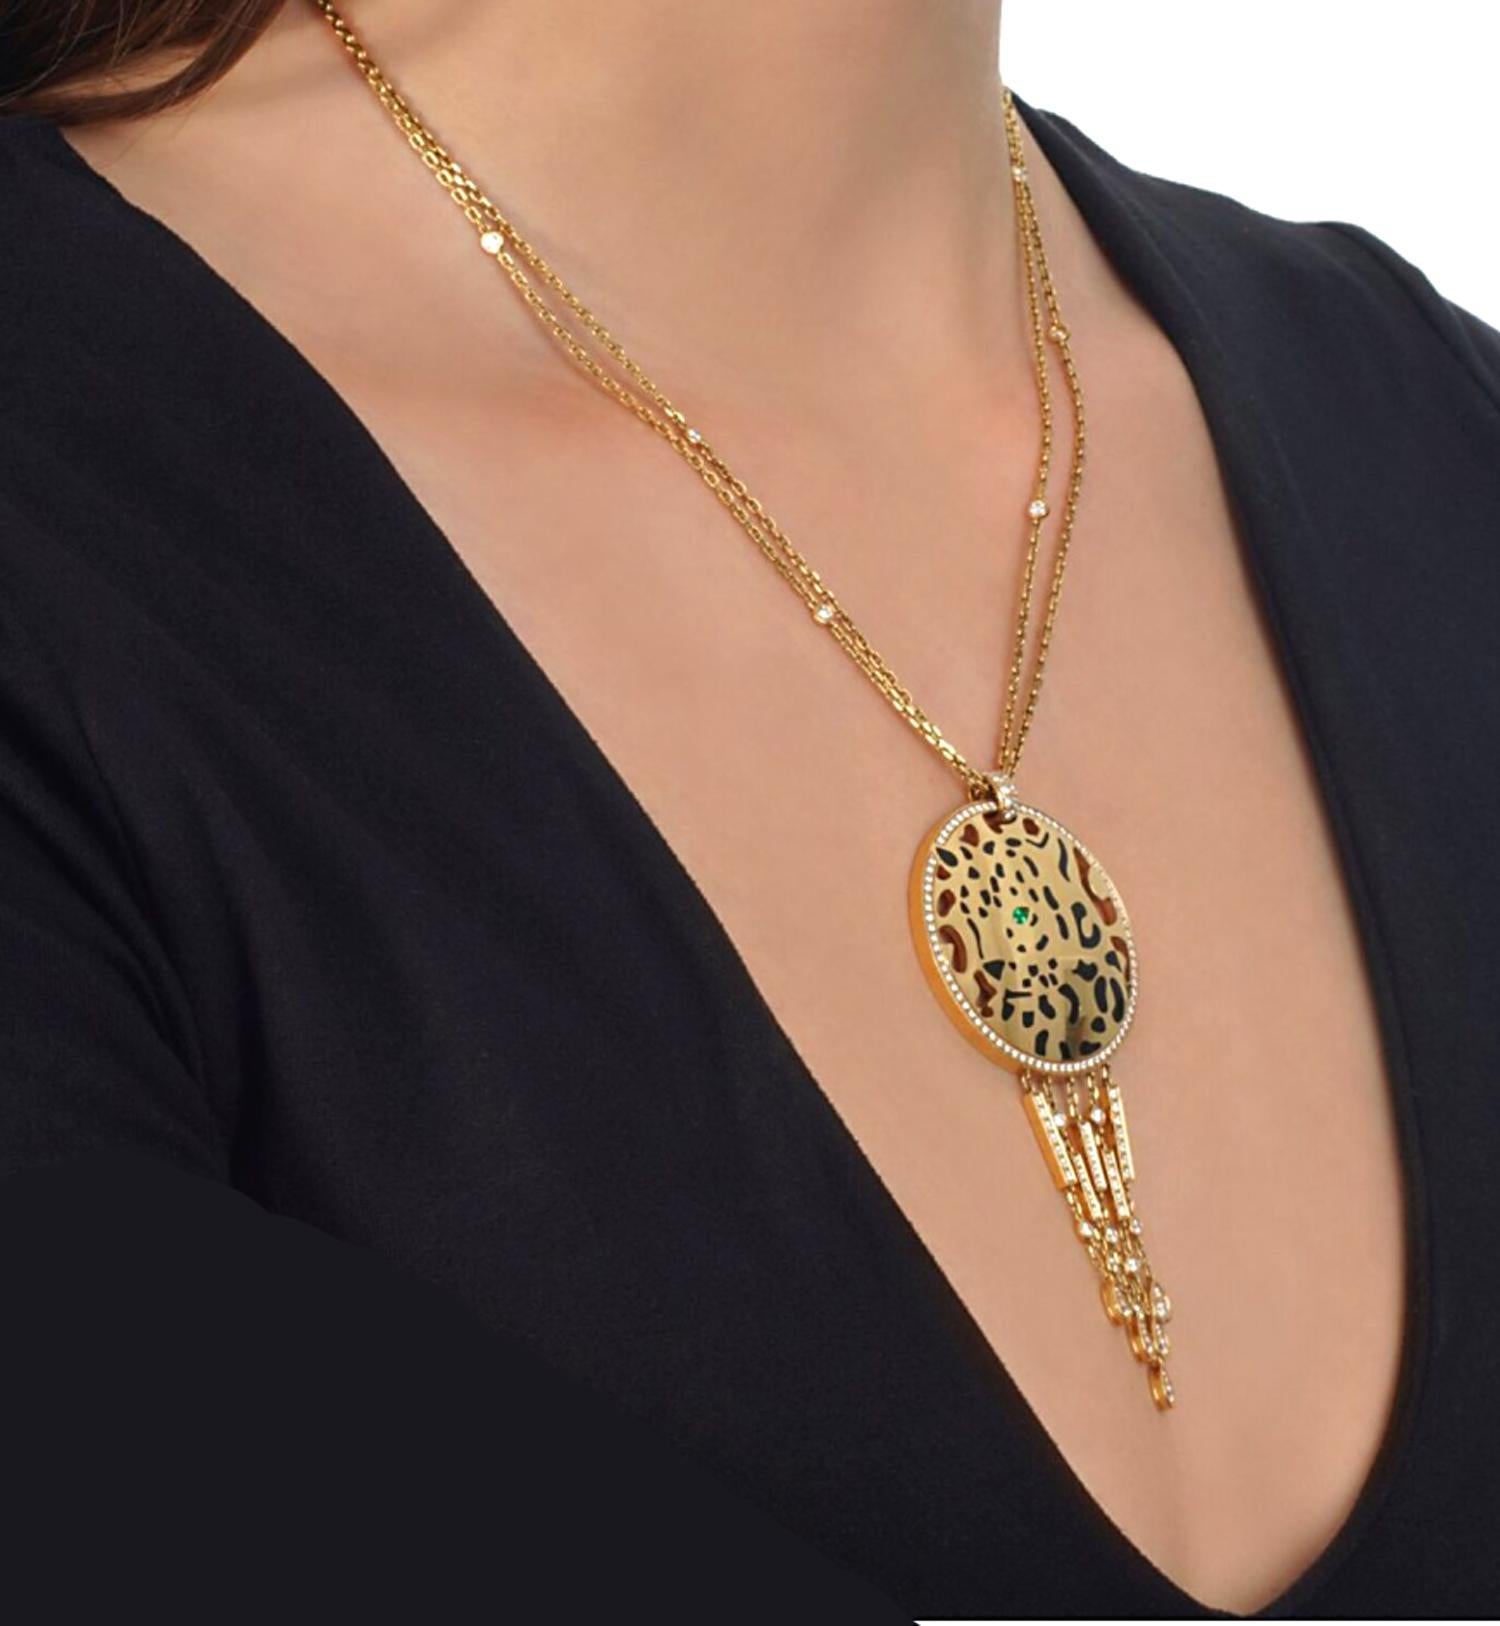 Die Diamant-Halskette Cartier Panthere aus Gelbgold ist ein Meisterwerk der Handwerkskunst und Eleganz und verkörpert den luxuriösen und innovativen Geist des Cartier-Designs. Im Mittelpunkt der Halskette steht ein atemberaubendes, kreisförmiges